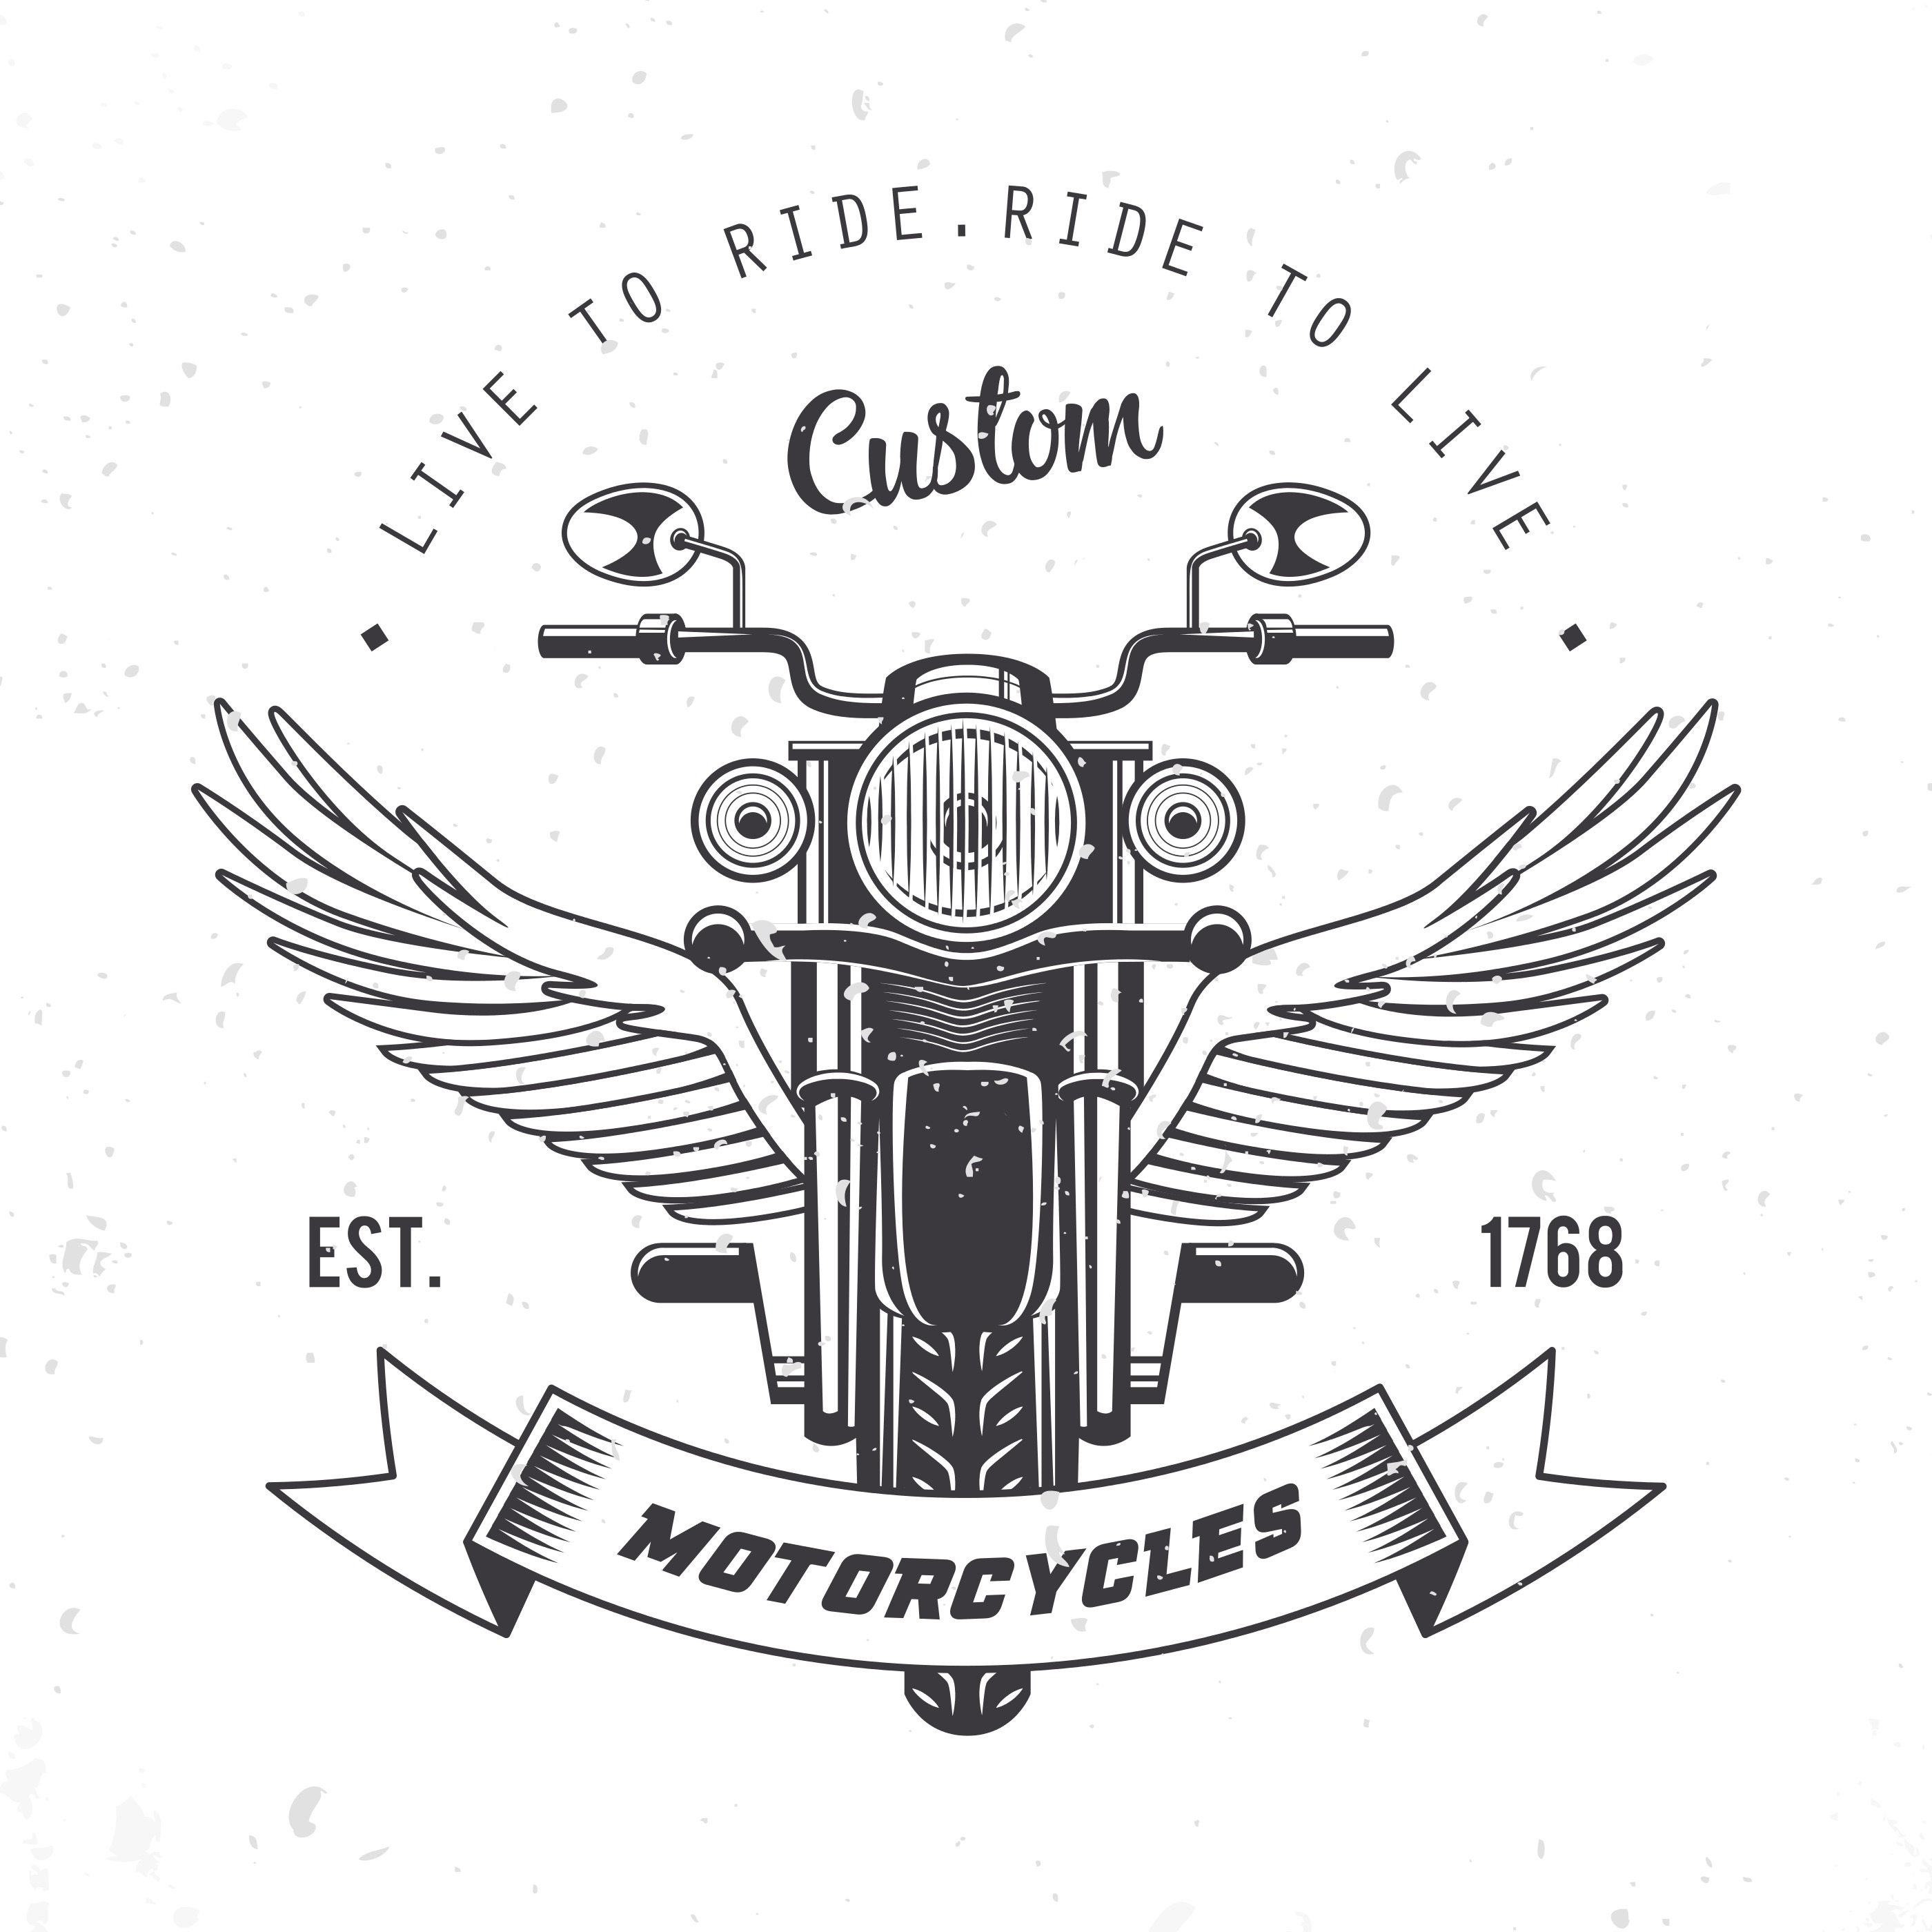 Vintage Motorcycle Emblem Vector 177918 Vector Art At Vecteezy